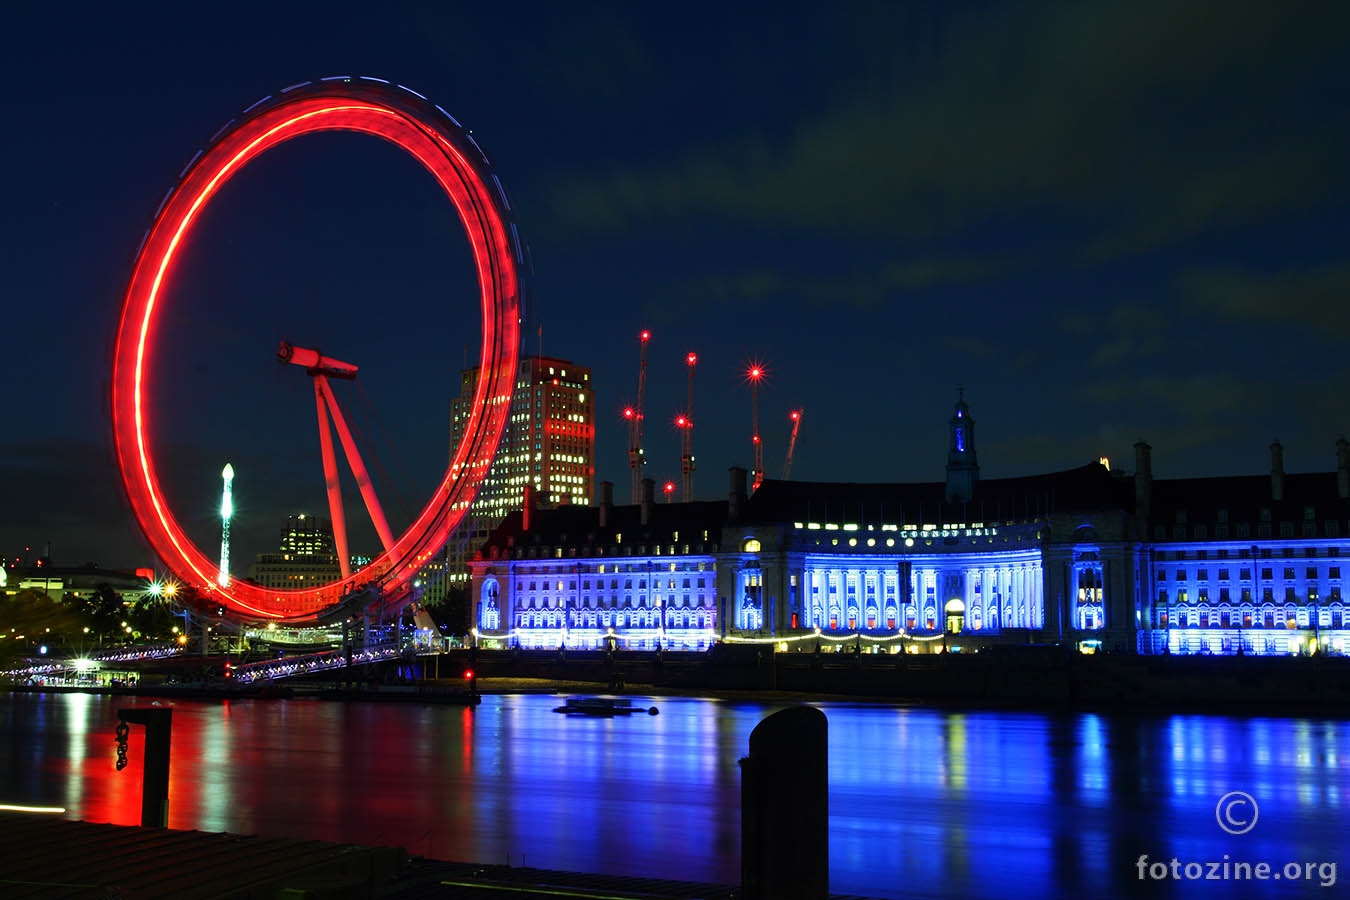 London eye at night...